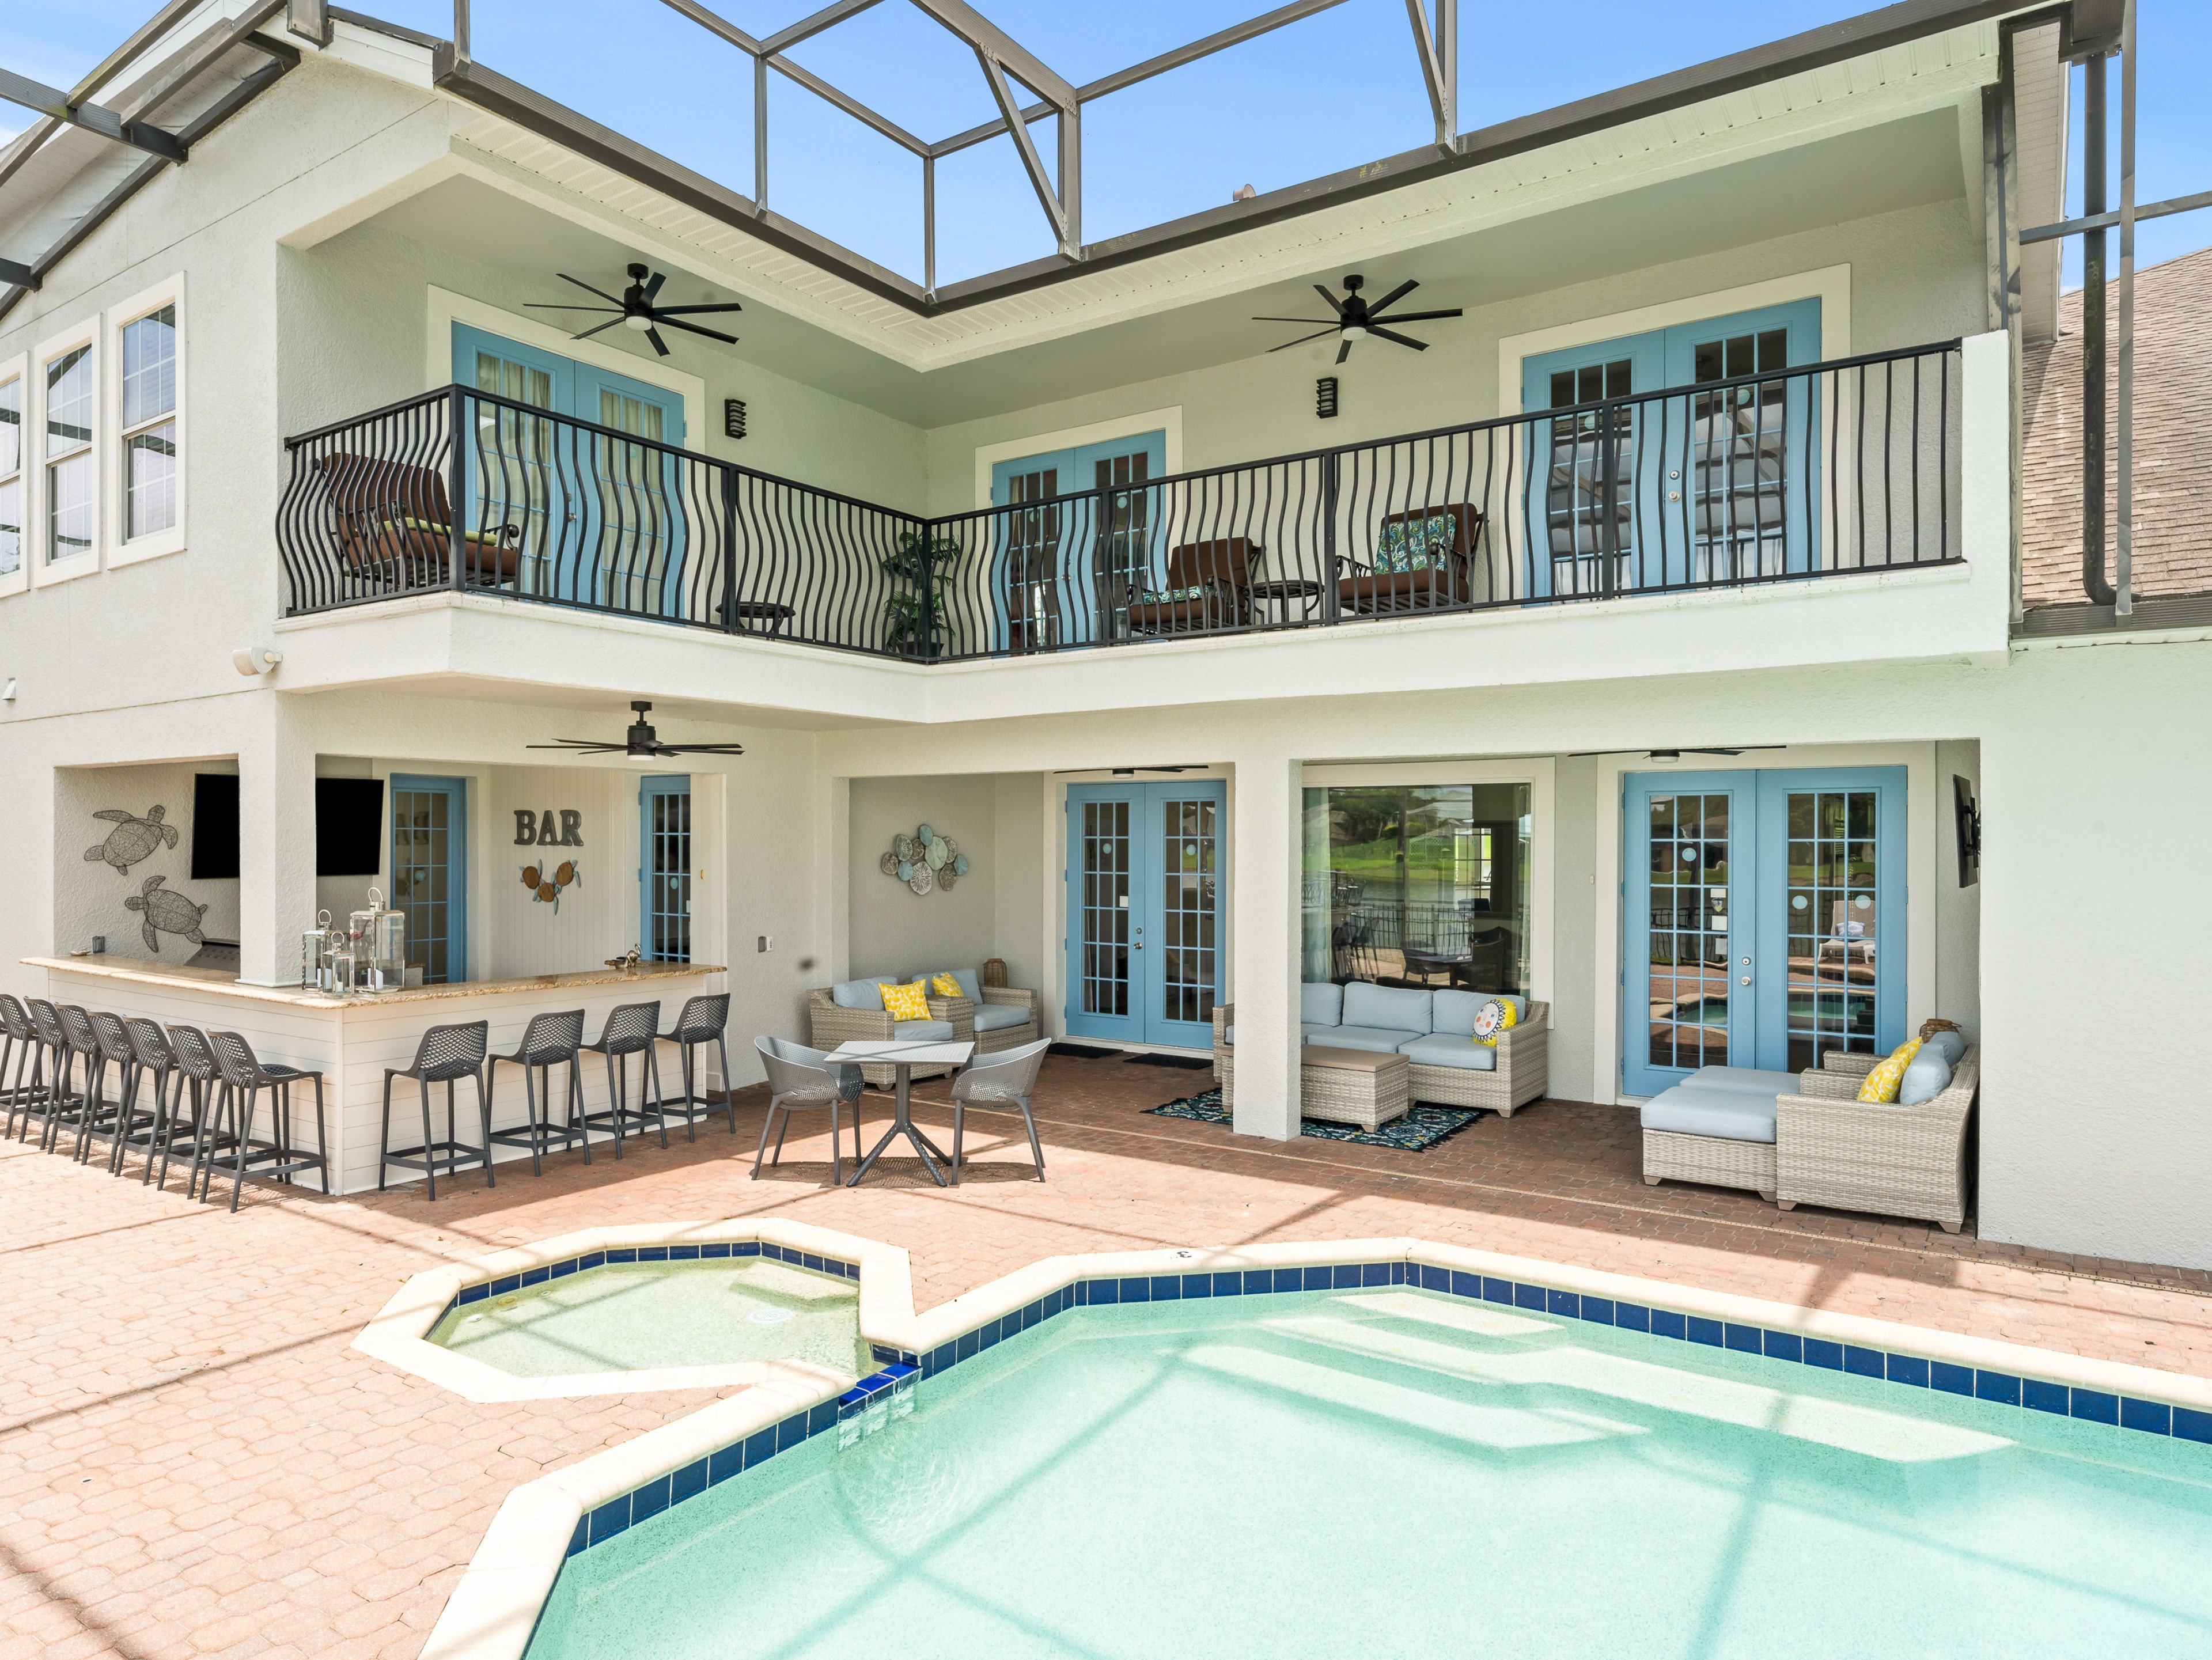 9 bedroom vacation rentals in Orlando Formosa Gardens 60